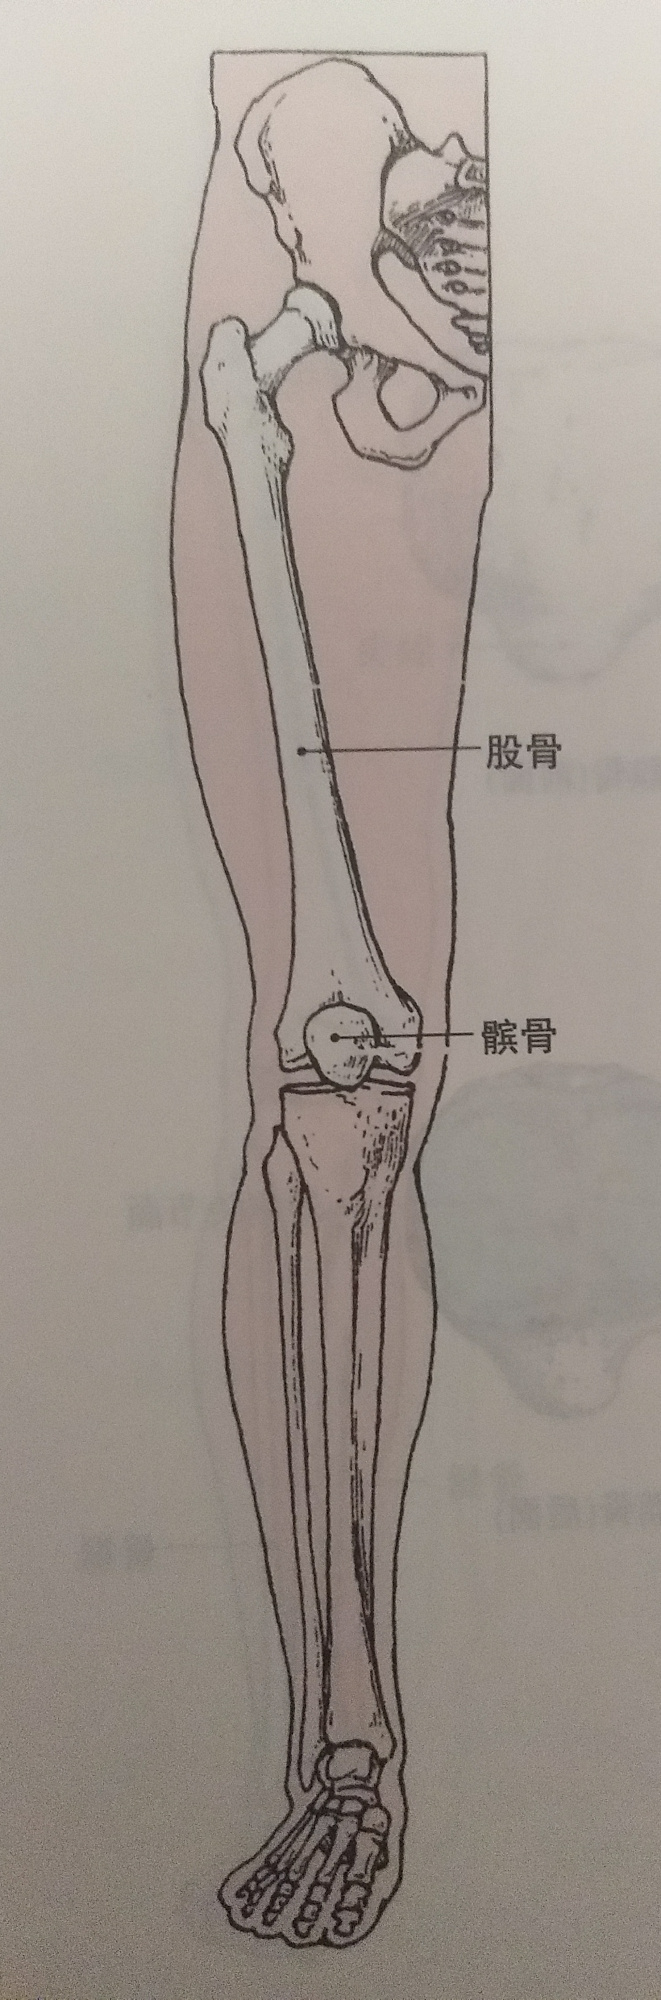 膝盖损伤:"髌骨关节痛" 恢复方案